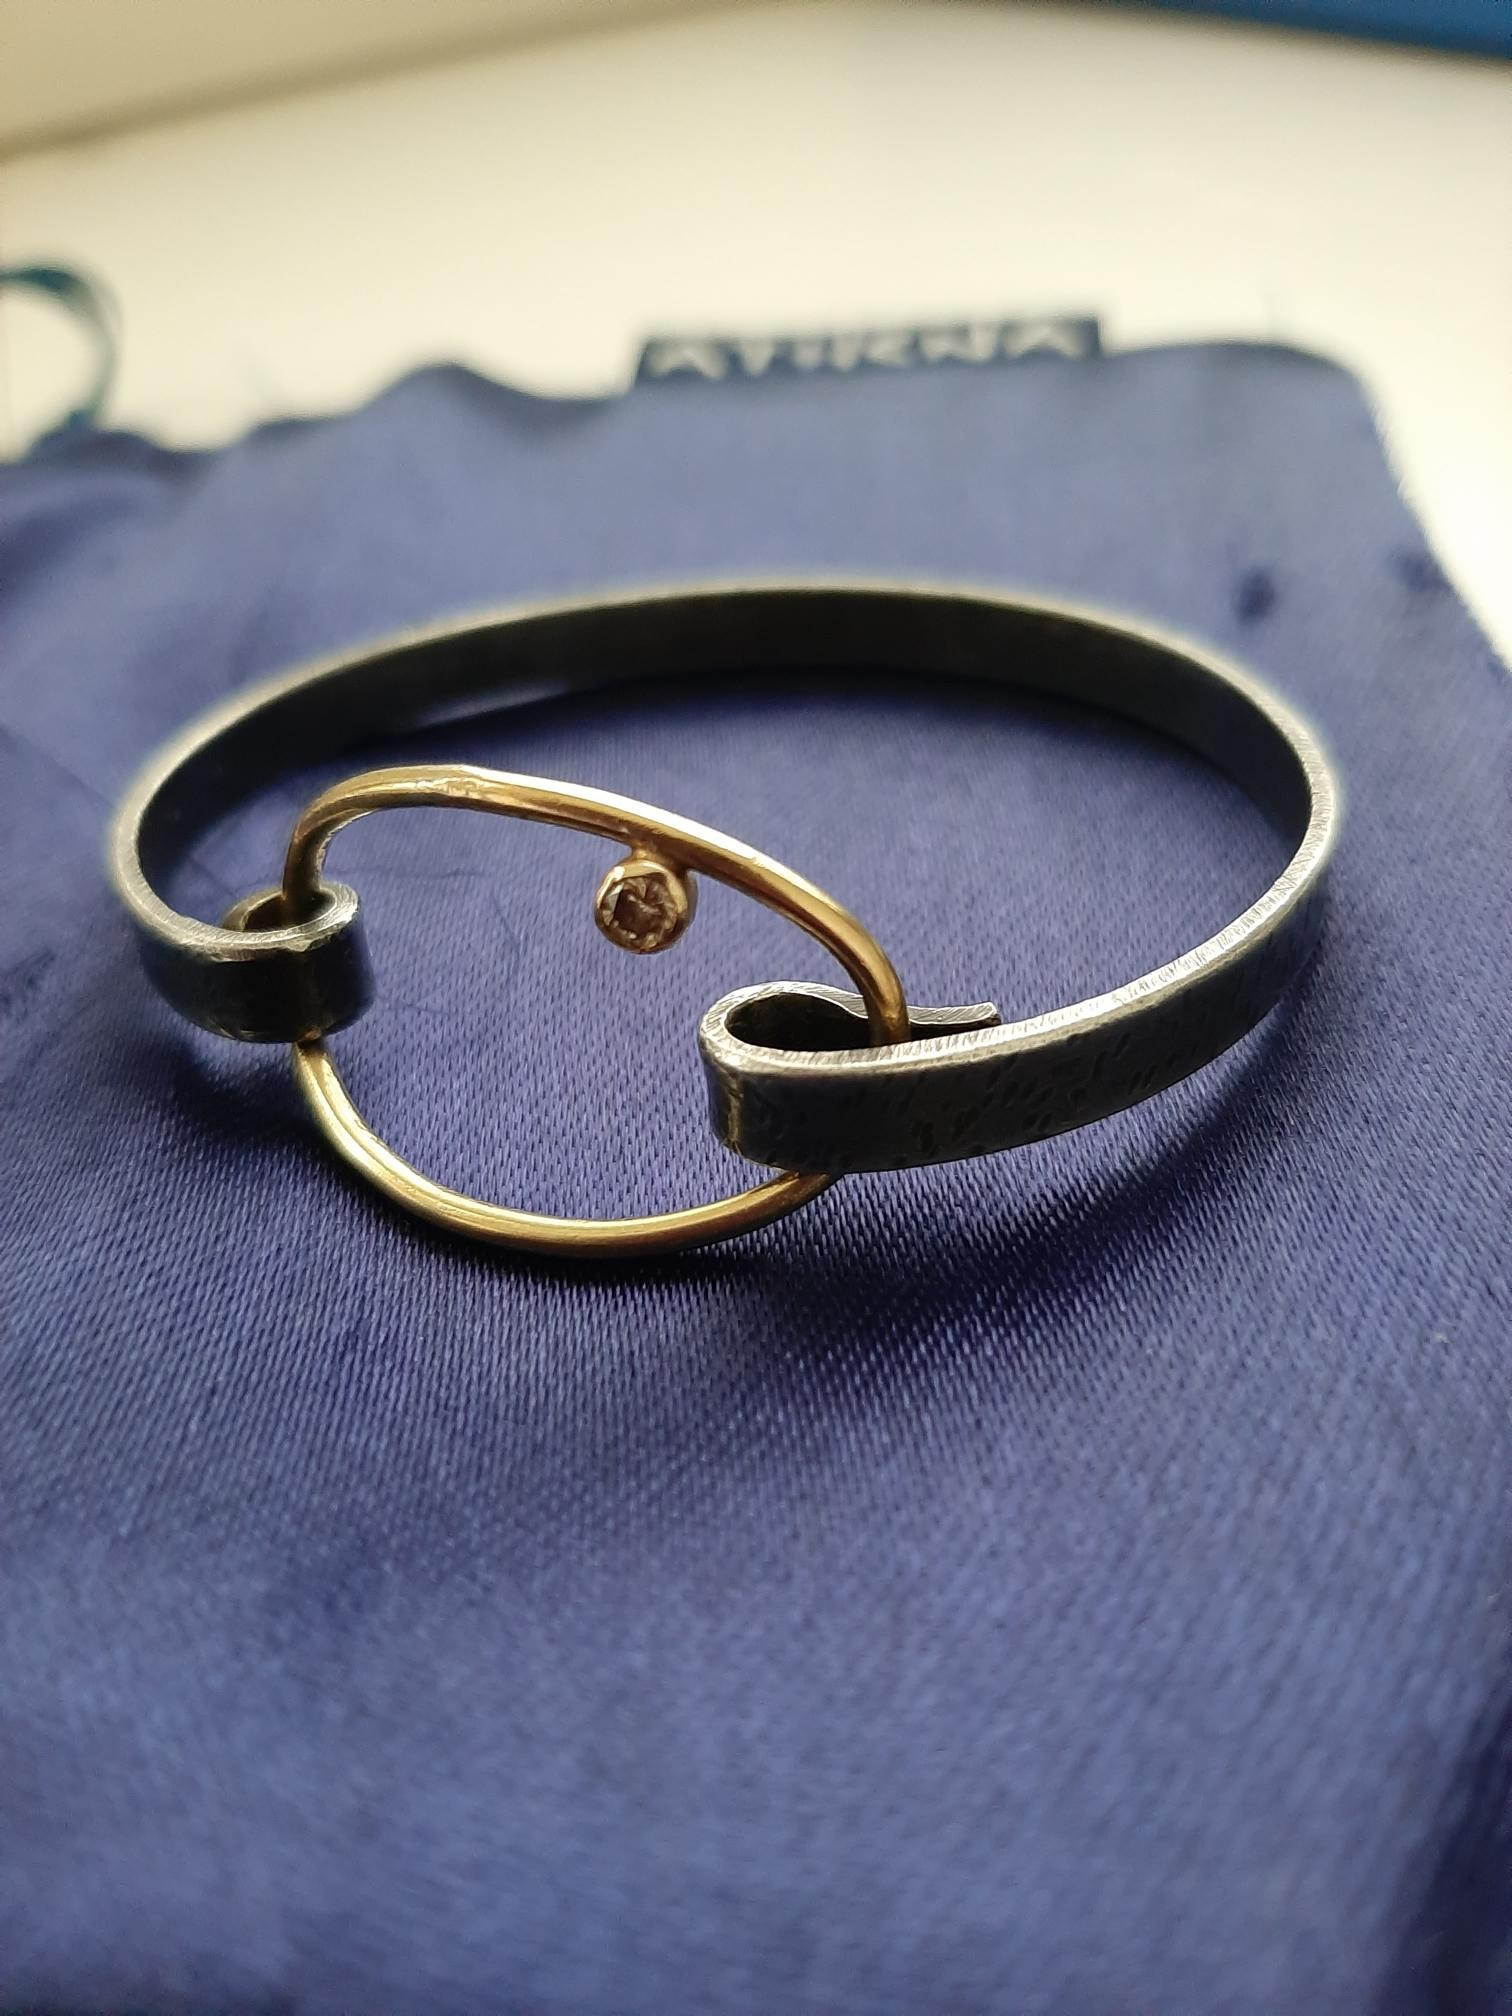 Designer armbånd Athena | FINN.no